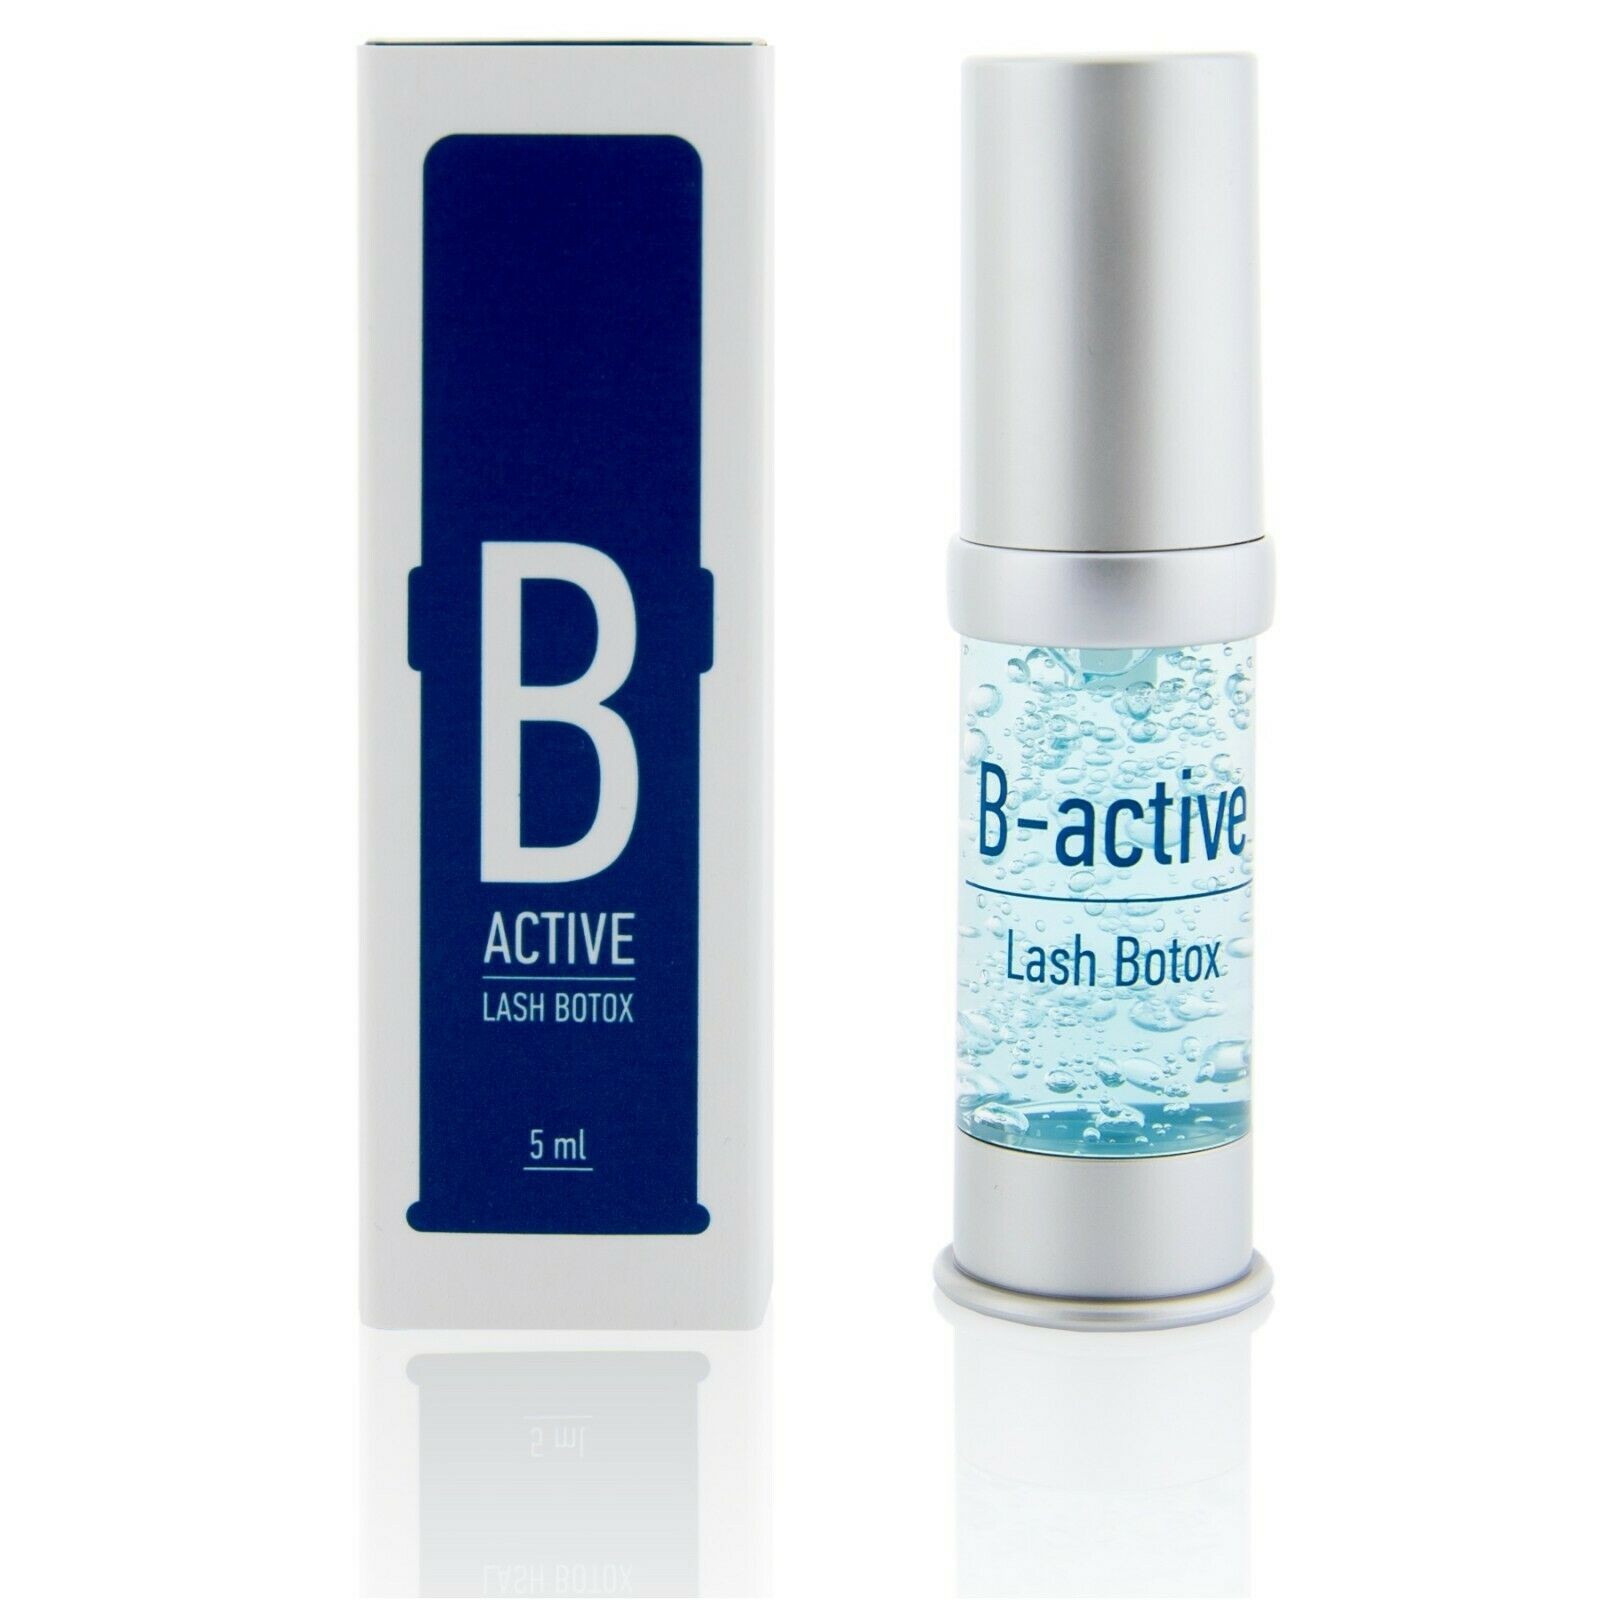 LOVELY Lash Booster LASH-BOTOX B Active - für lang anhaltendes Volumen, starke Wimpern und Glanz, für professionelle Wimpernbehandlung und für die tägliche Pflege zu Hause, schützt vor UV-Strahlung